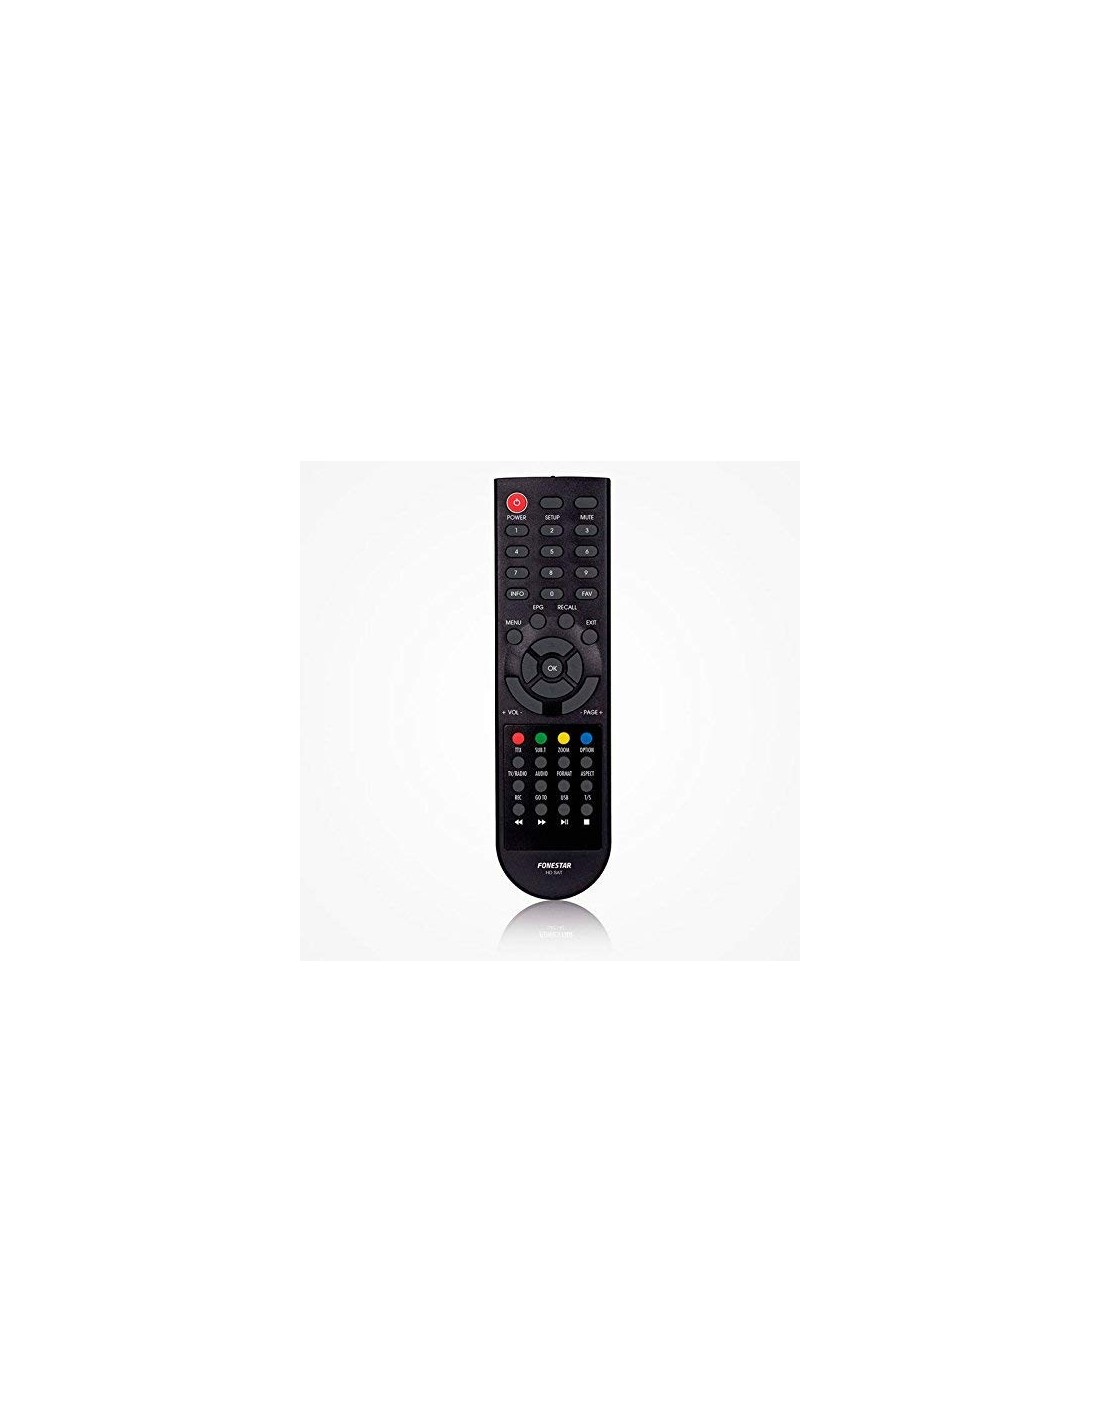 Mando original Fonestar RDS-585WHD compatible con 584, 583, 582 y 581 –  Mercatron – Tienda Online